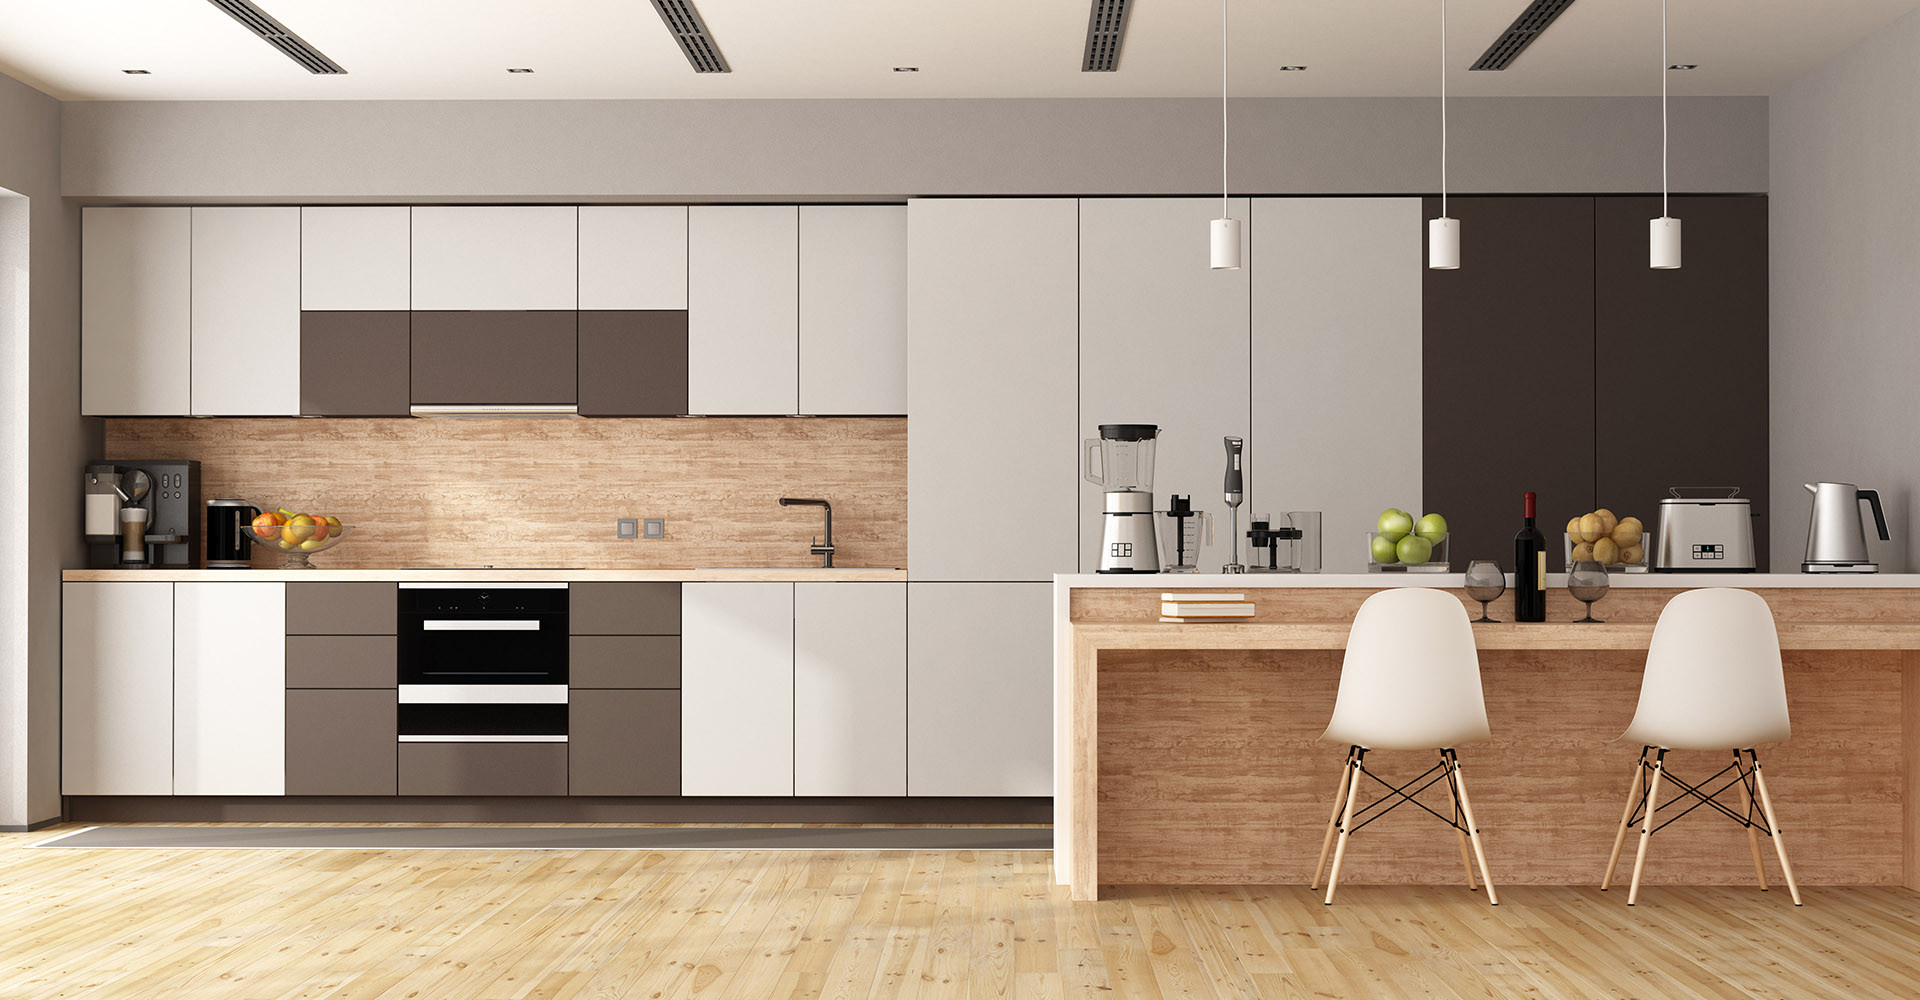 Kitchen Interior Designs | Best Modular Kitchen Interiors For Home regarding Kitchen Interior Design